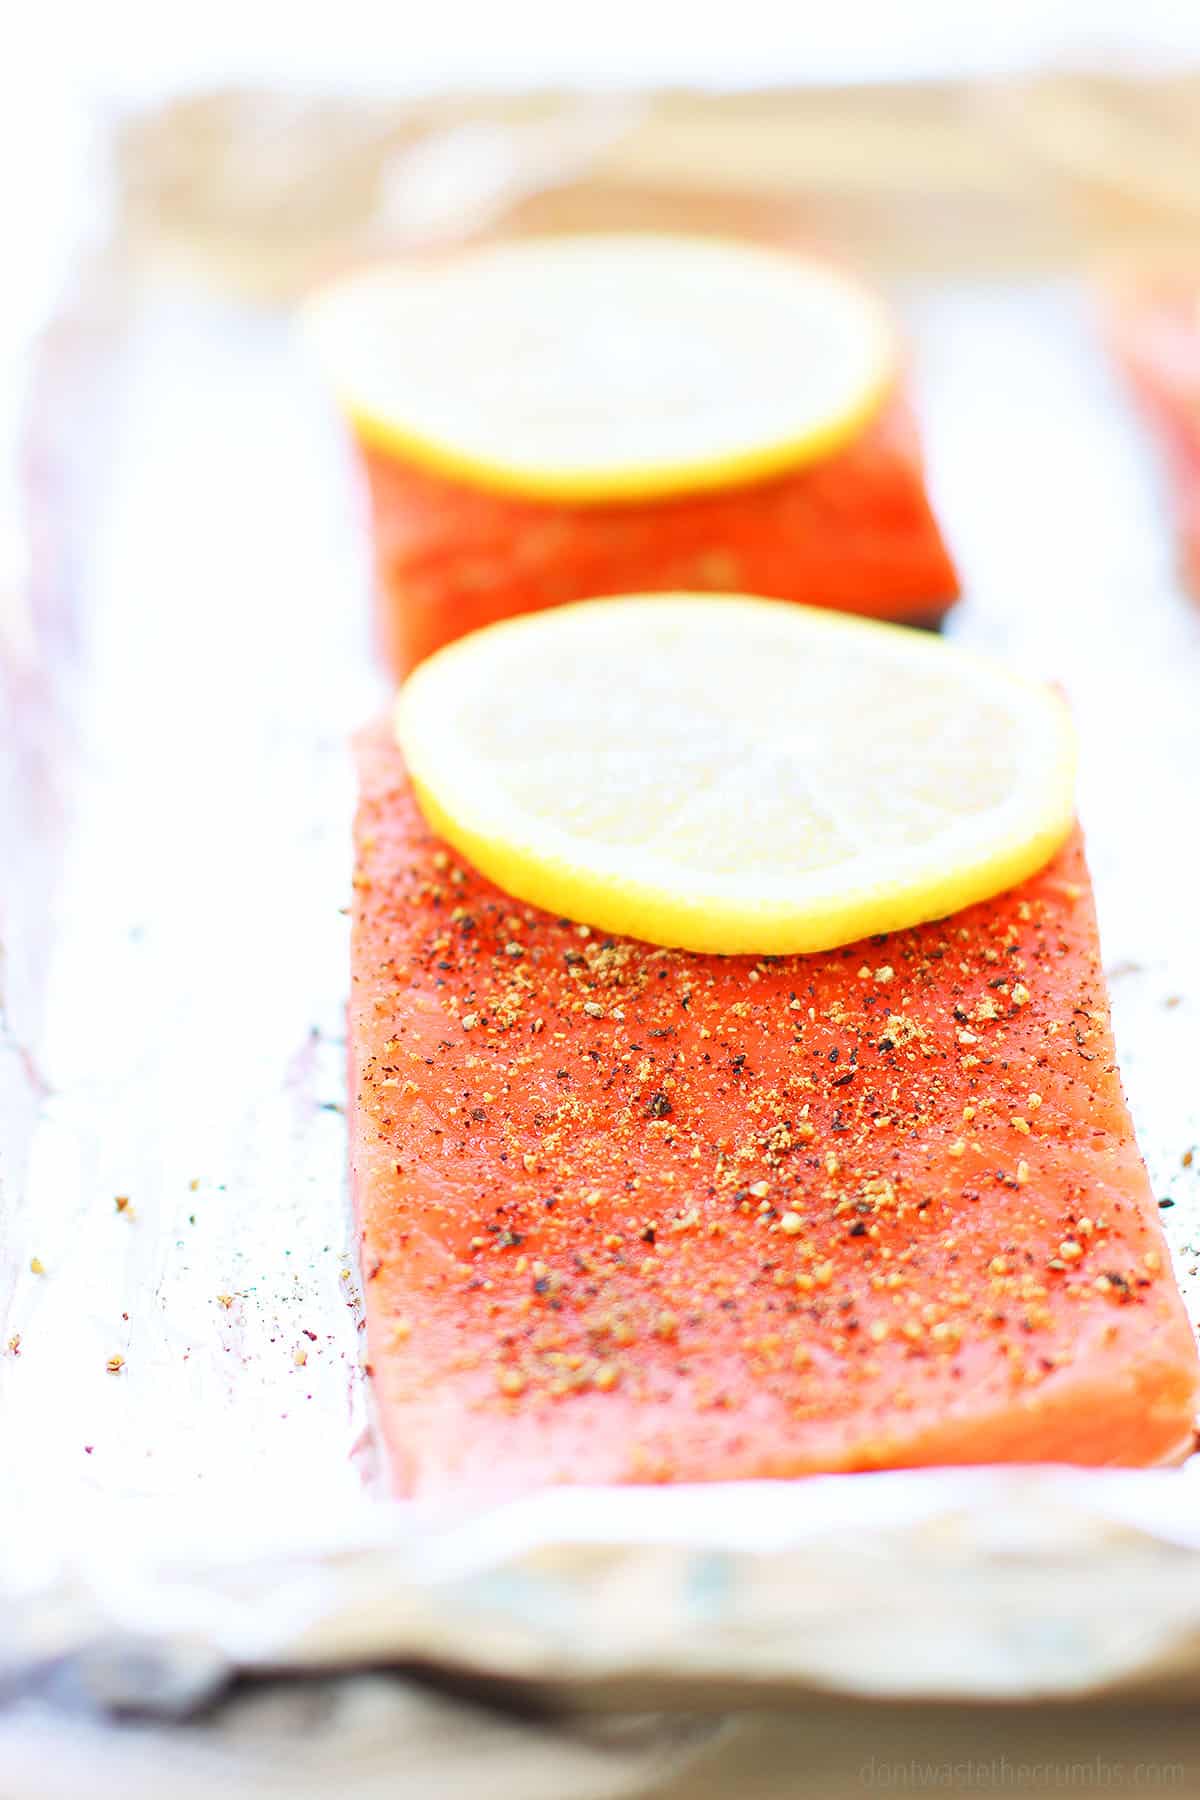 lemon pepper salmon uses simple lemon pepper seasoning made with msg